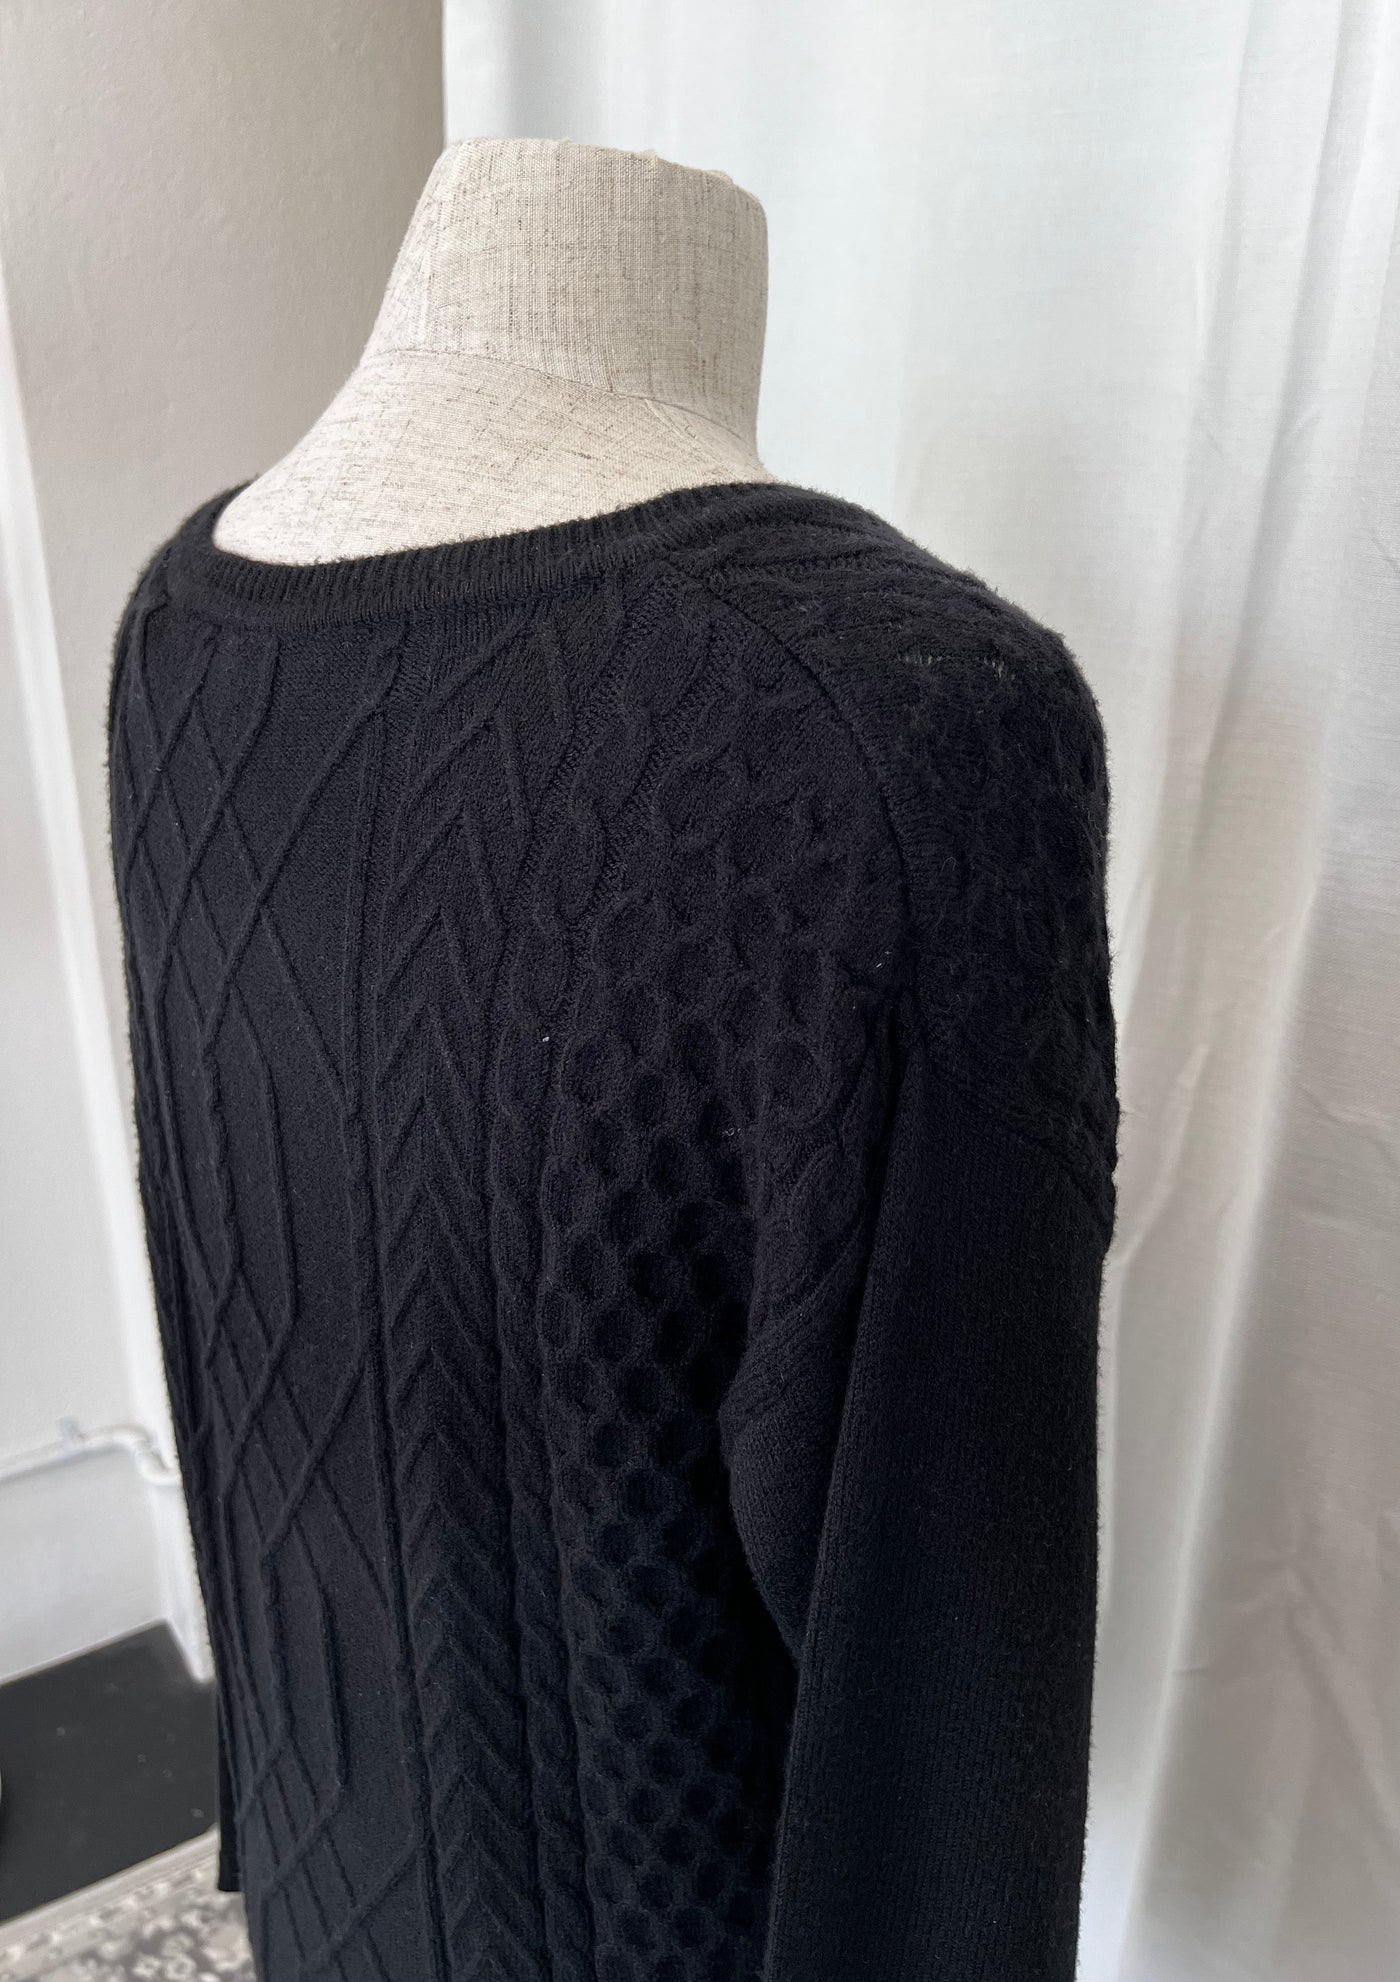 Linked Together Sweater - Black